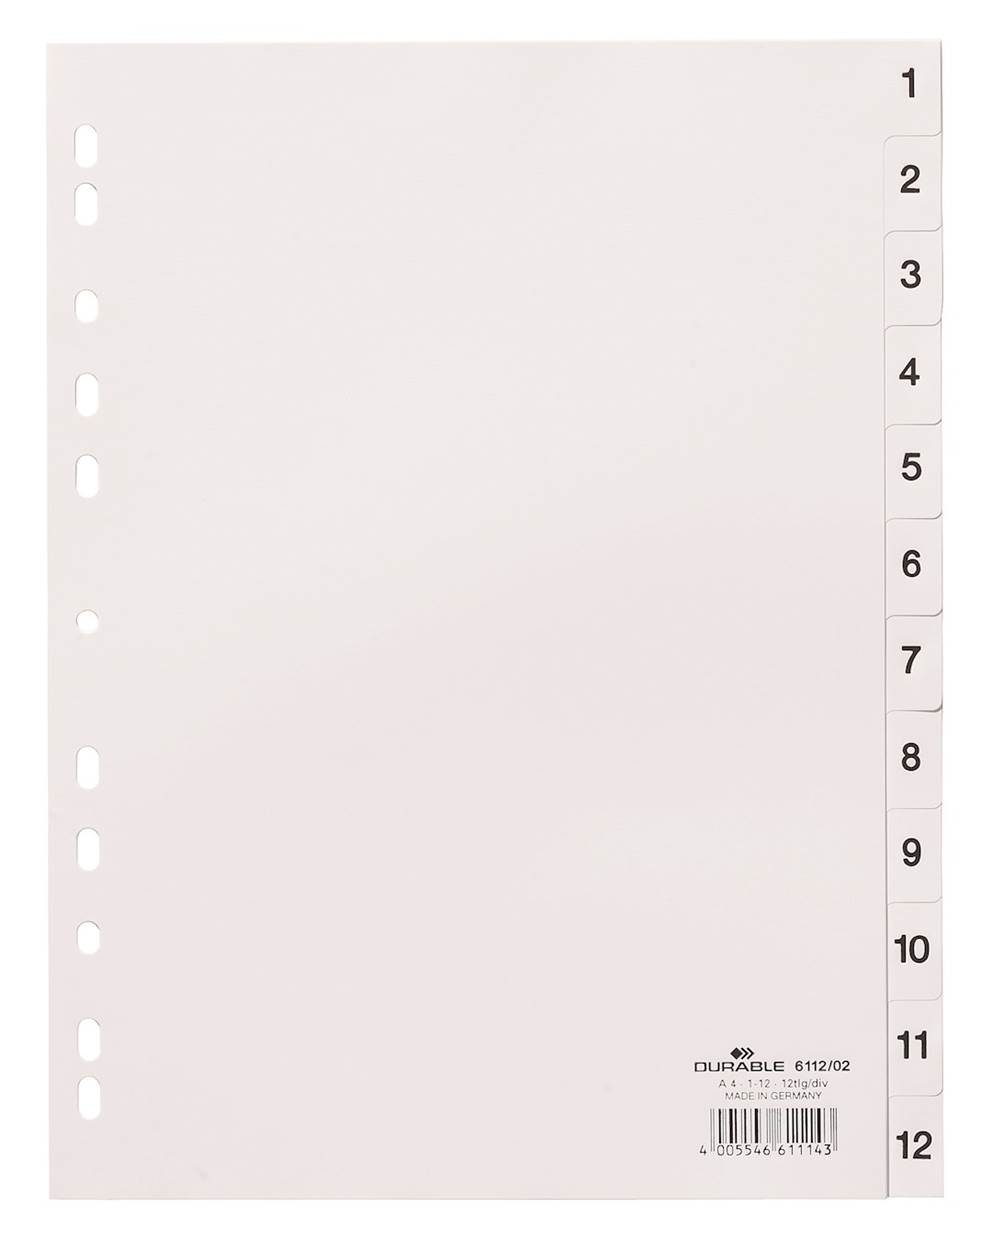 Przekładki PP A4 białe, nadrukowane indeksy, 1-12 biały